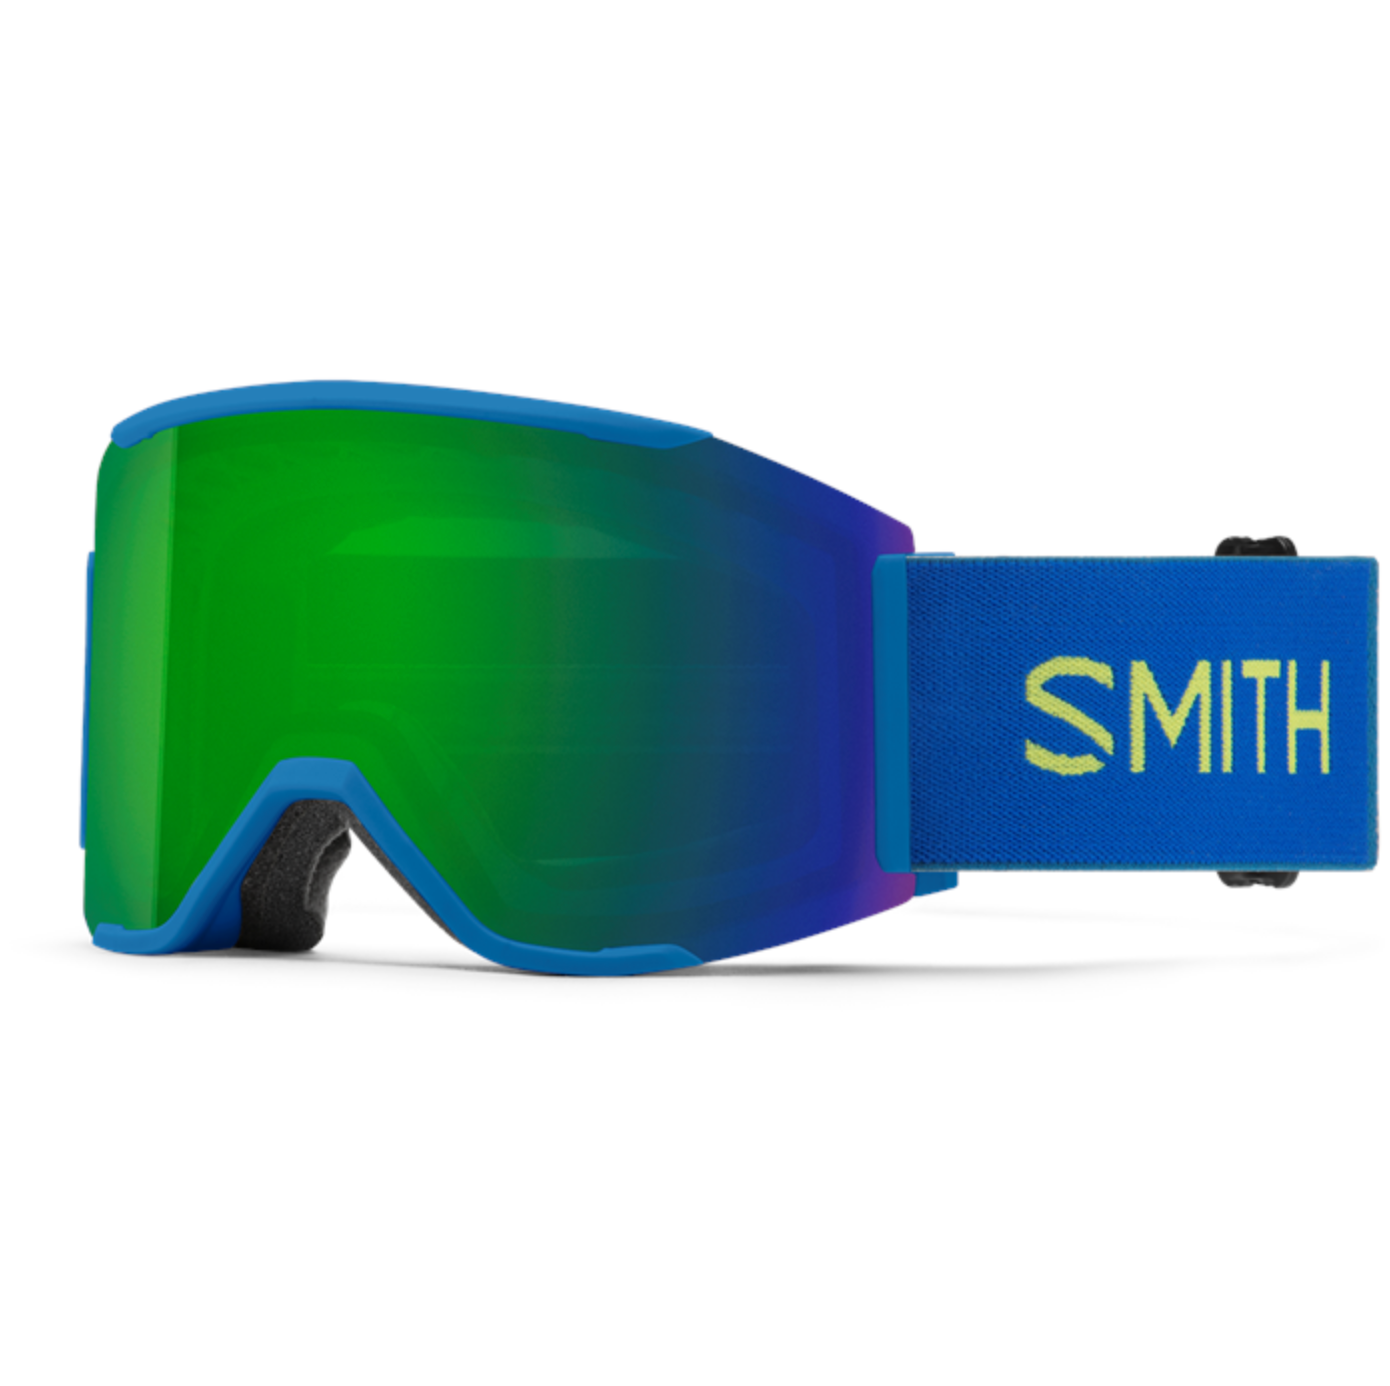 Smith Squad Mag Goggles